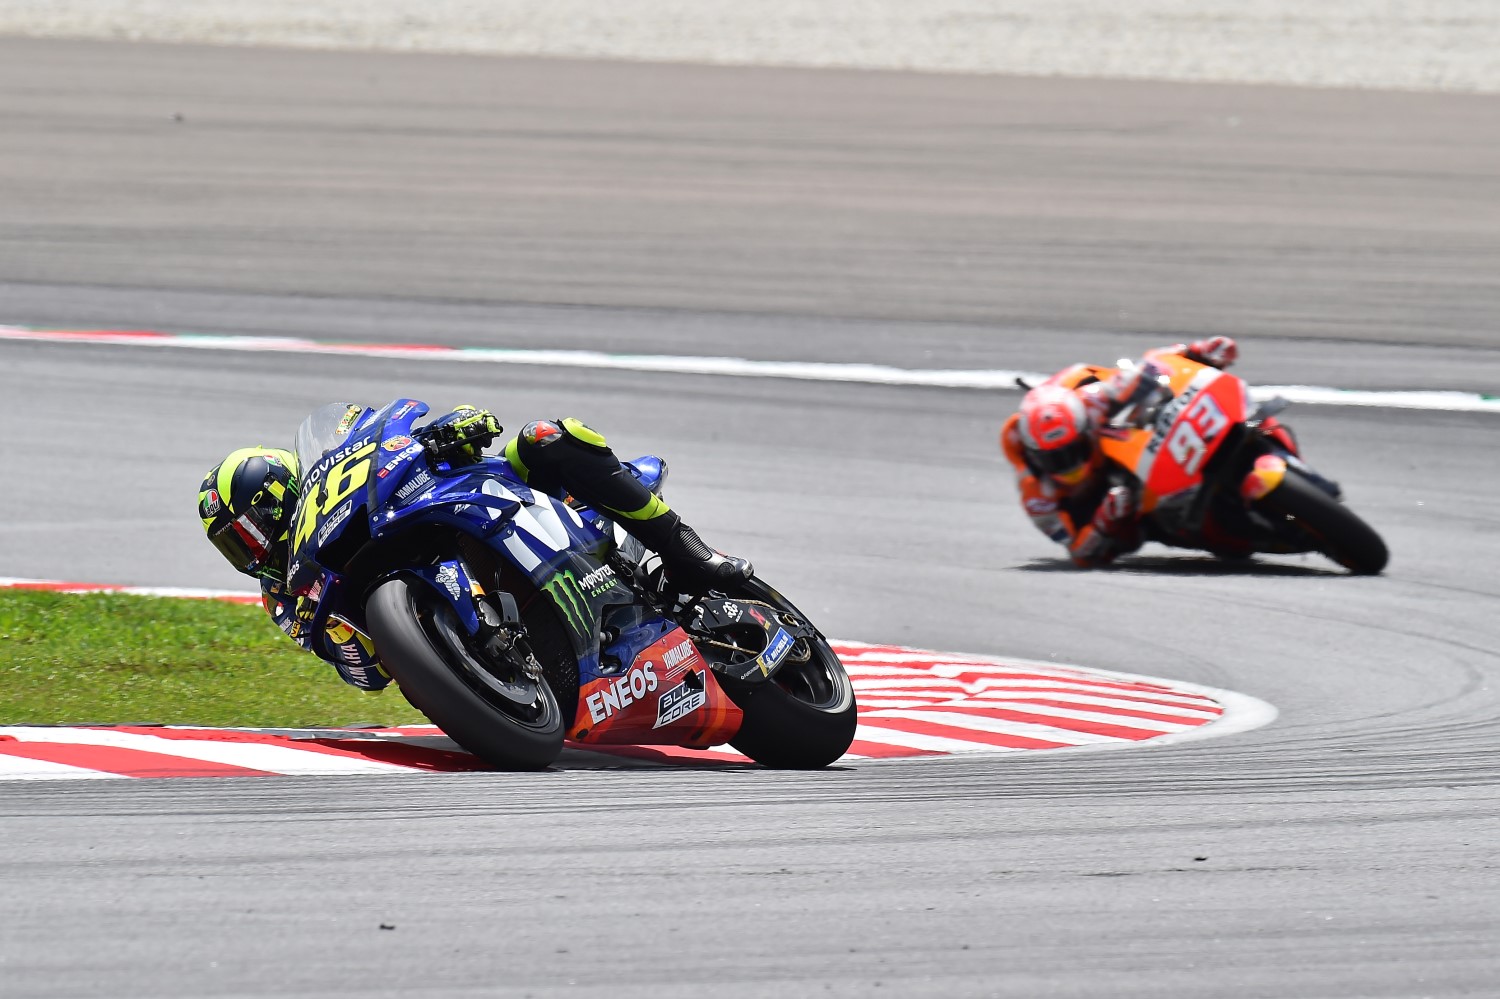 Marquez hunts down Rossi